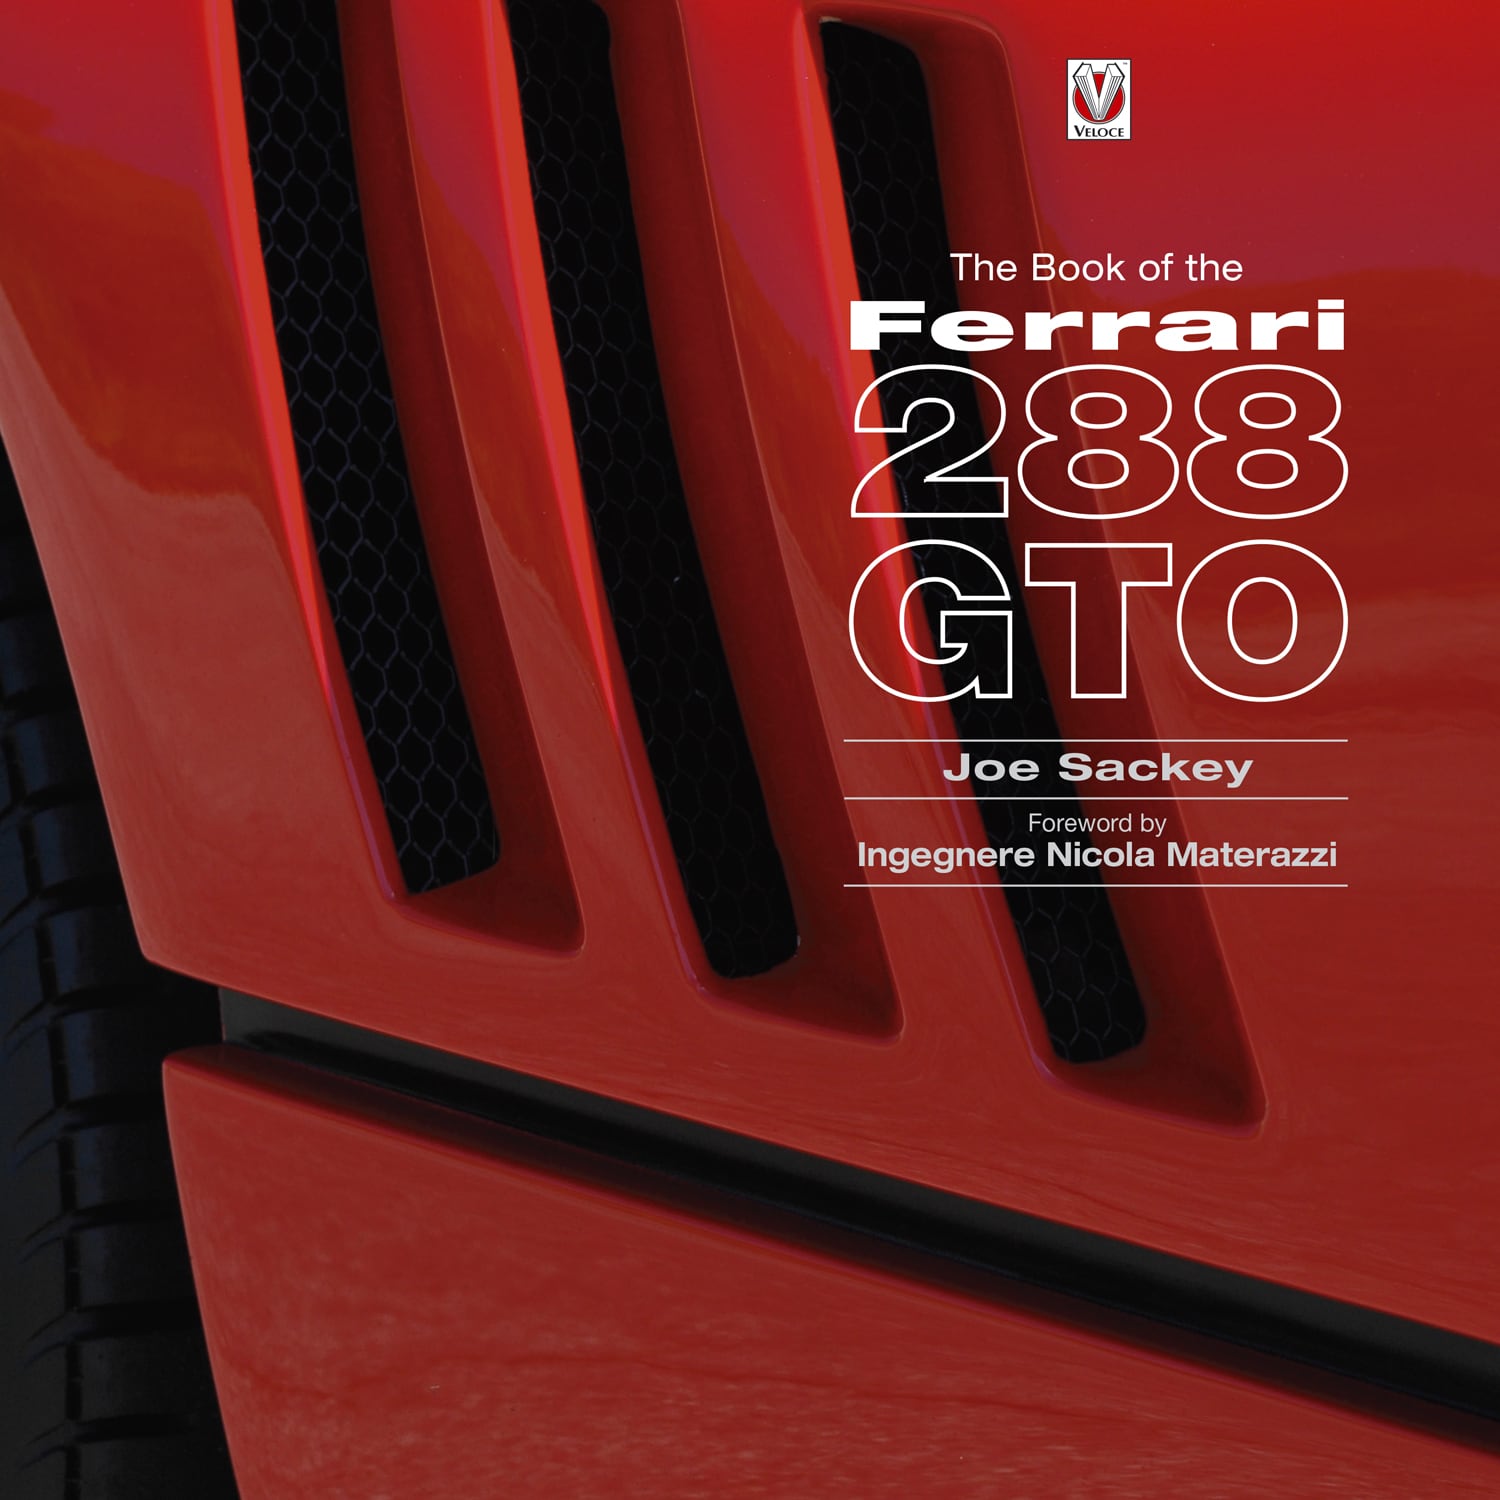 The Book of the Ferrari 288 GTO